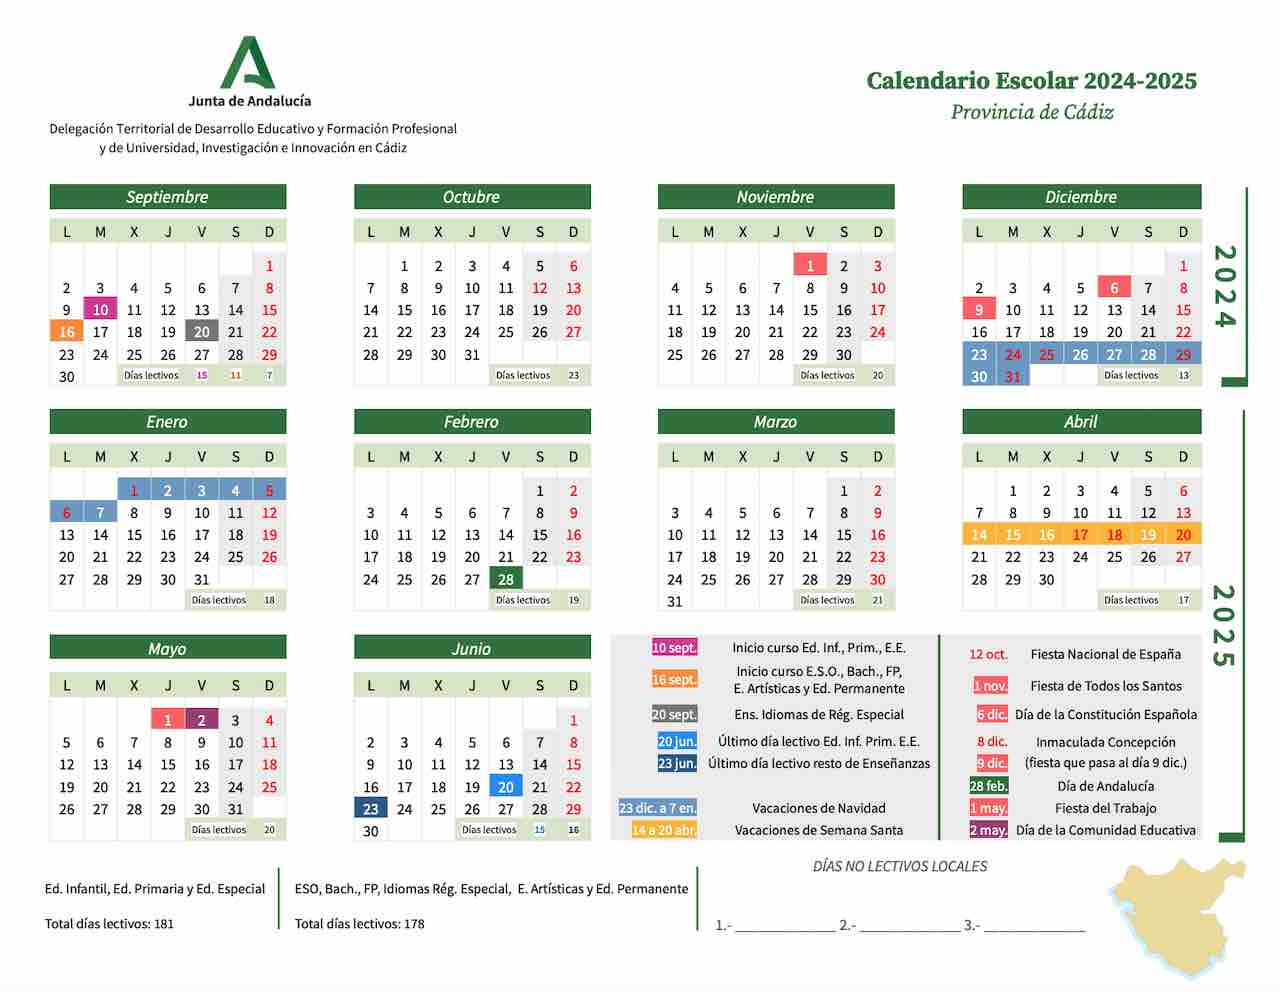 Calendario escolar Cádiz para el curso 2024-2025